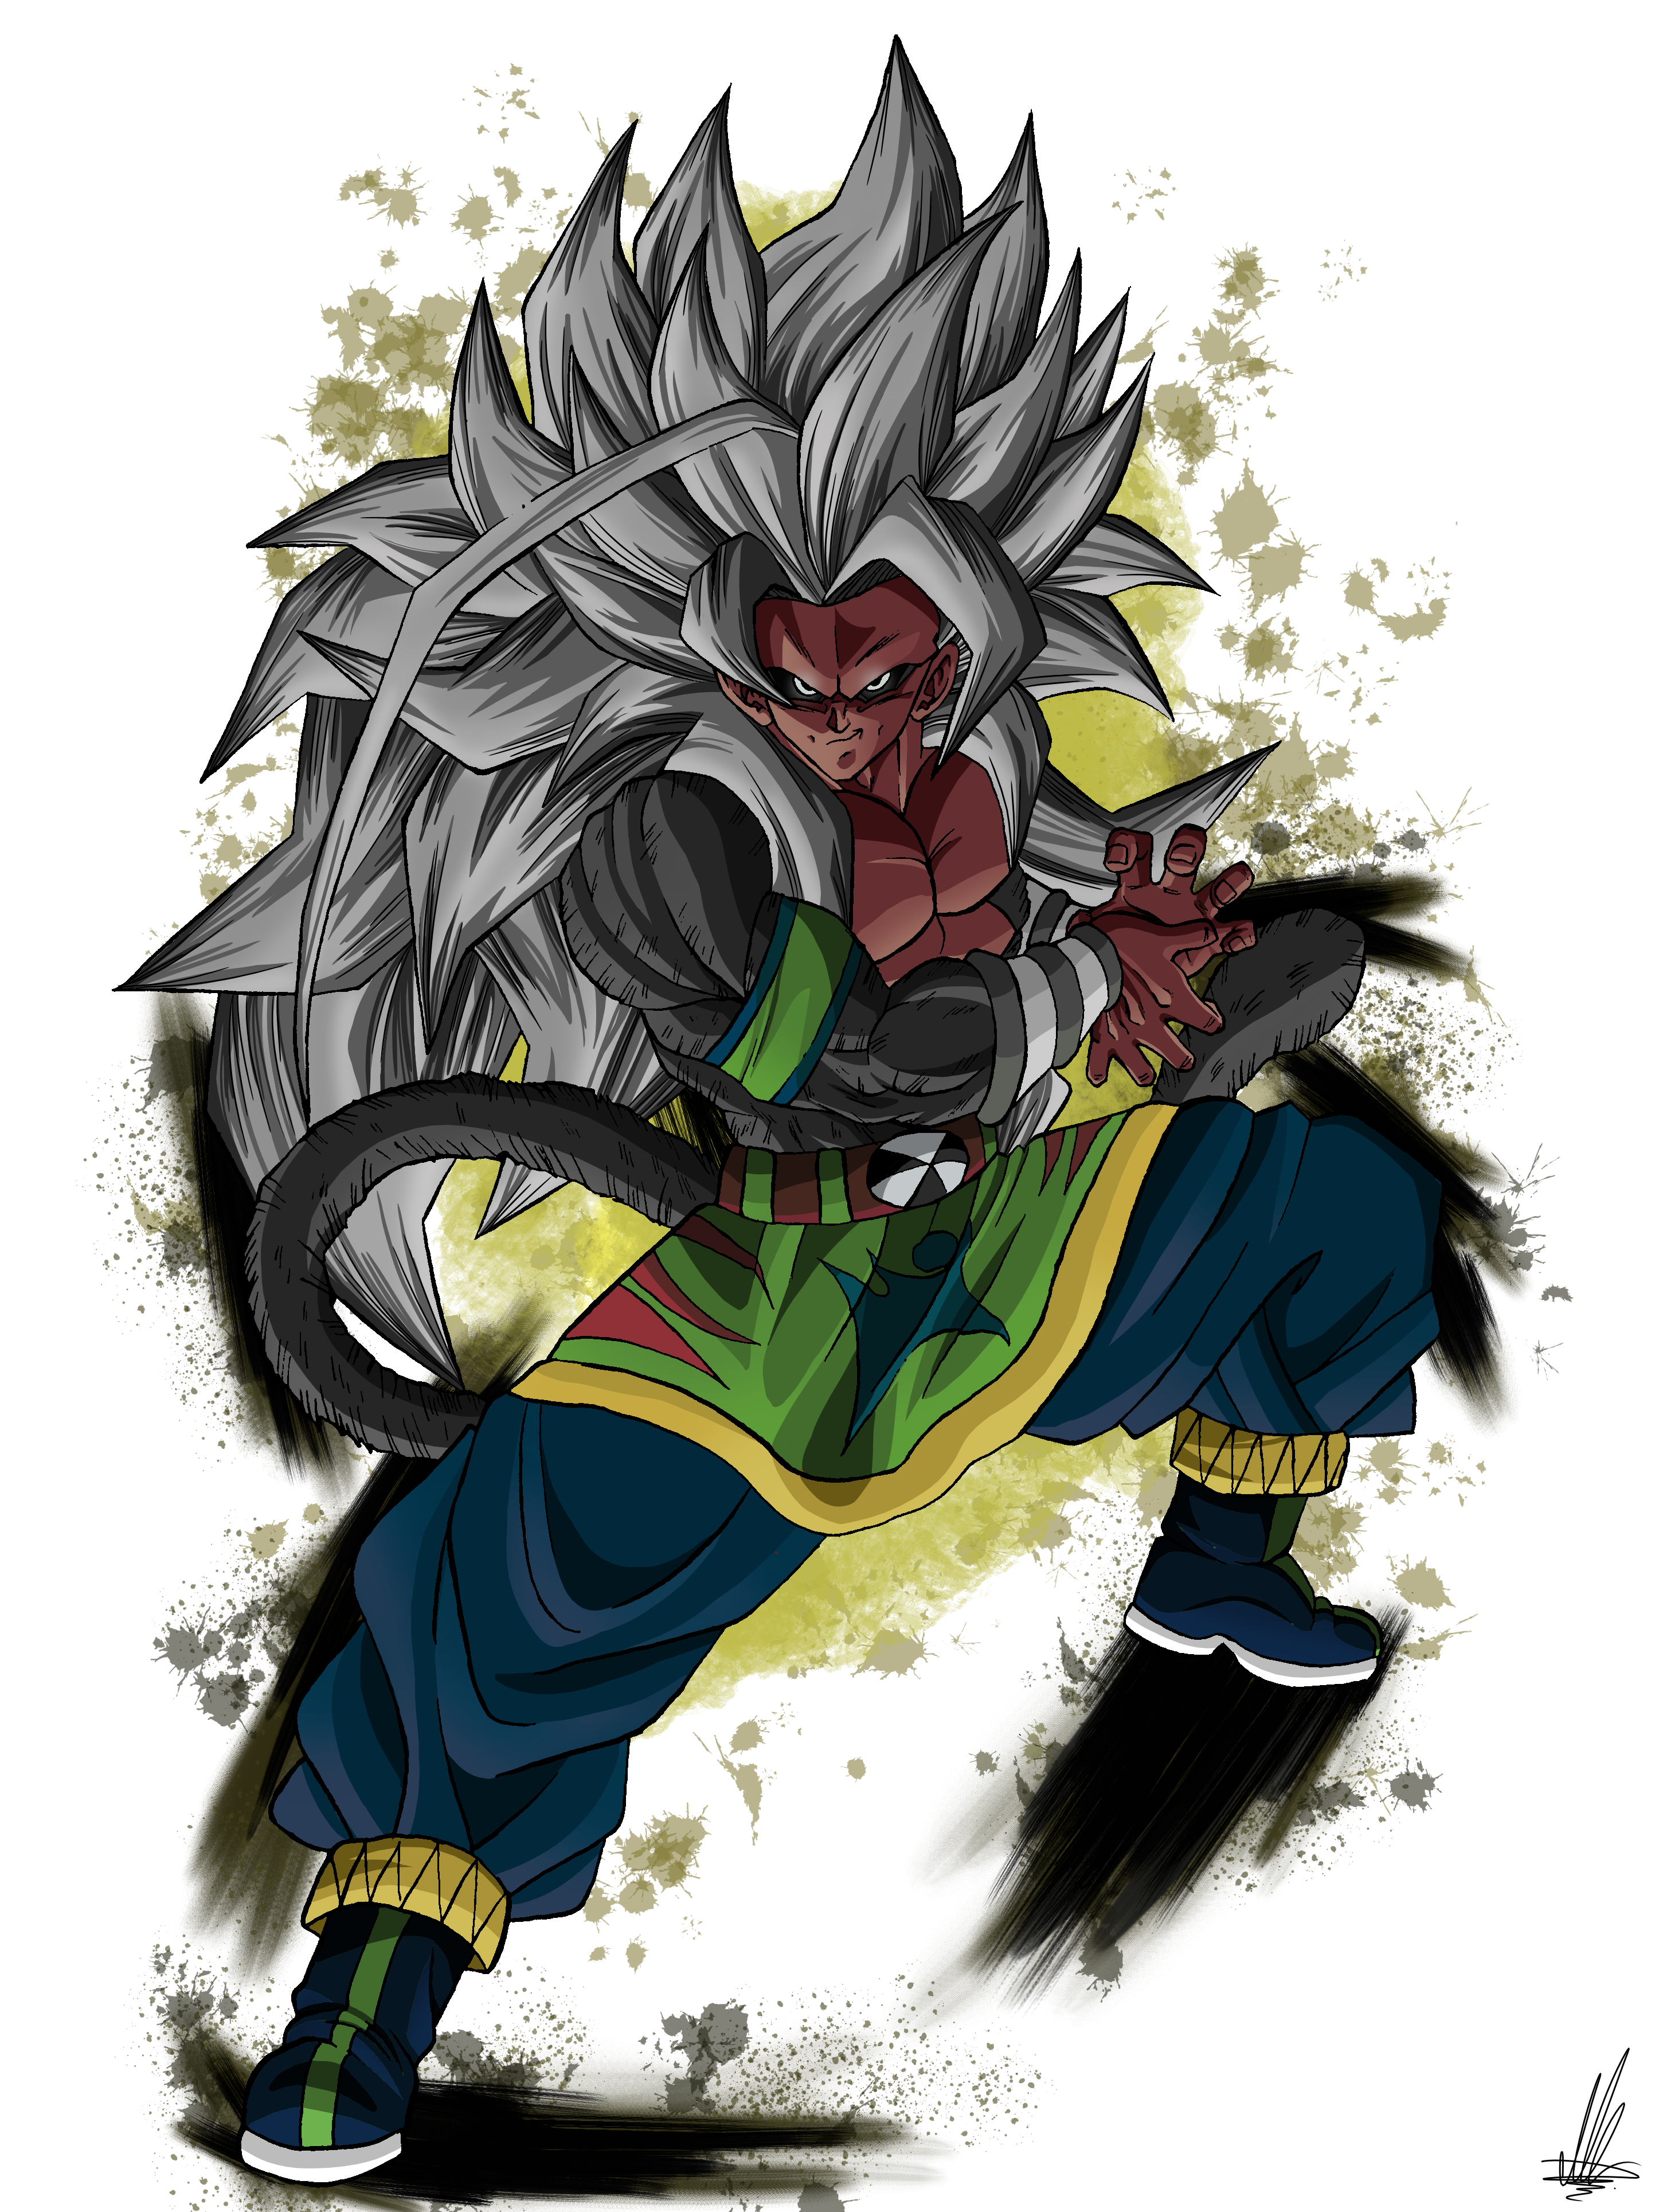 Goku ssj5 kamehameha V2 by Unkoshin on DeviantArt